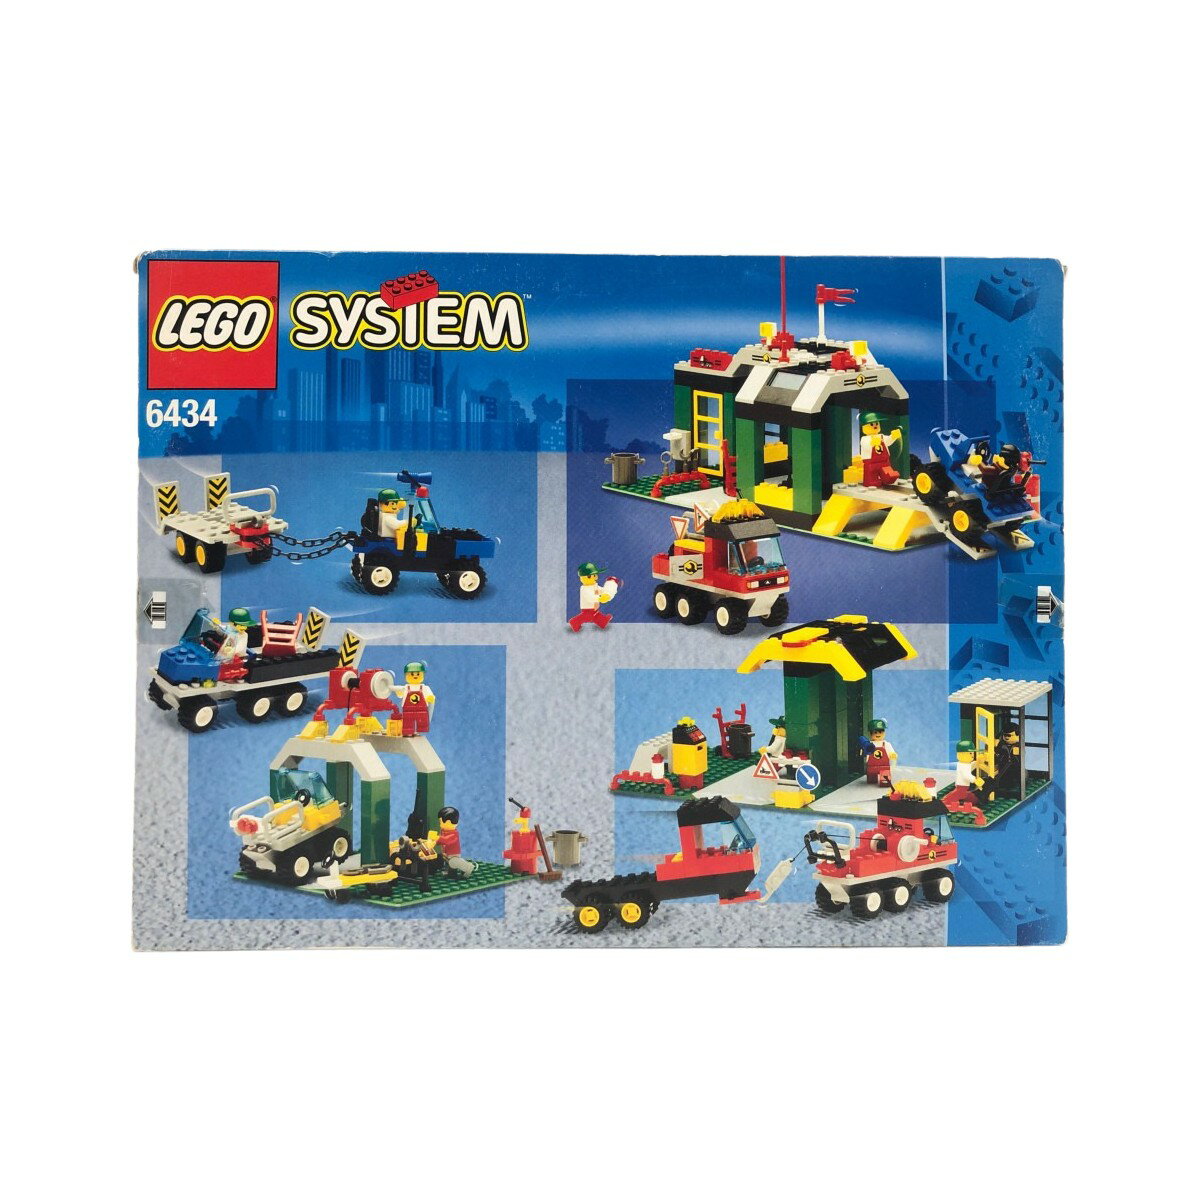 〇〇【中古】LEGO レゴ レゴブロック オートガレージ 6434 Bランク